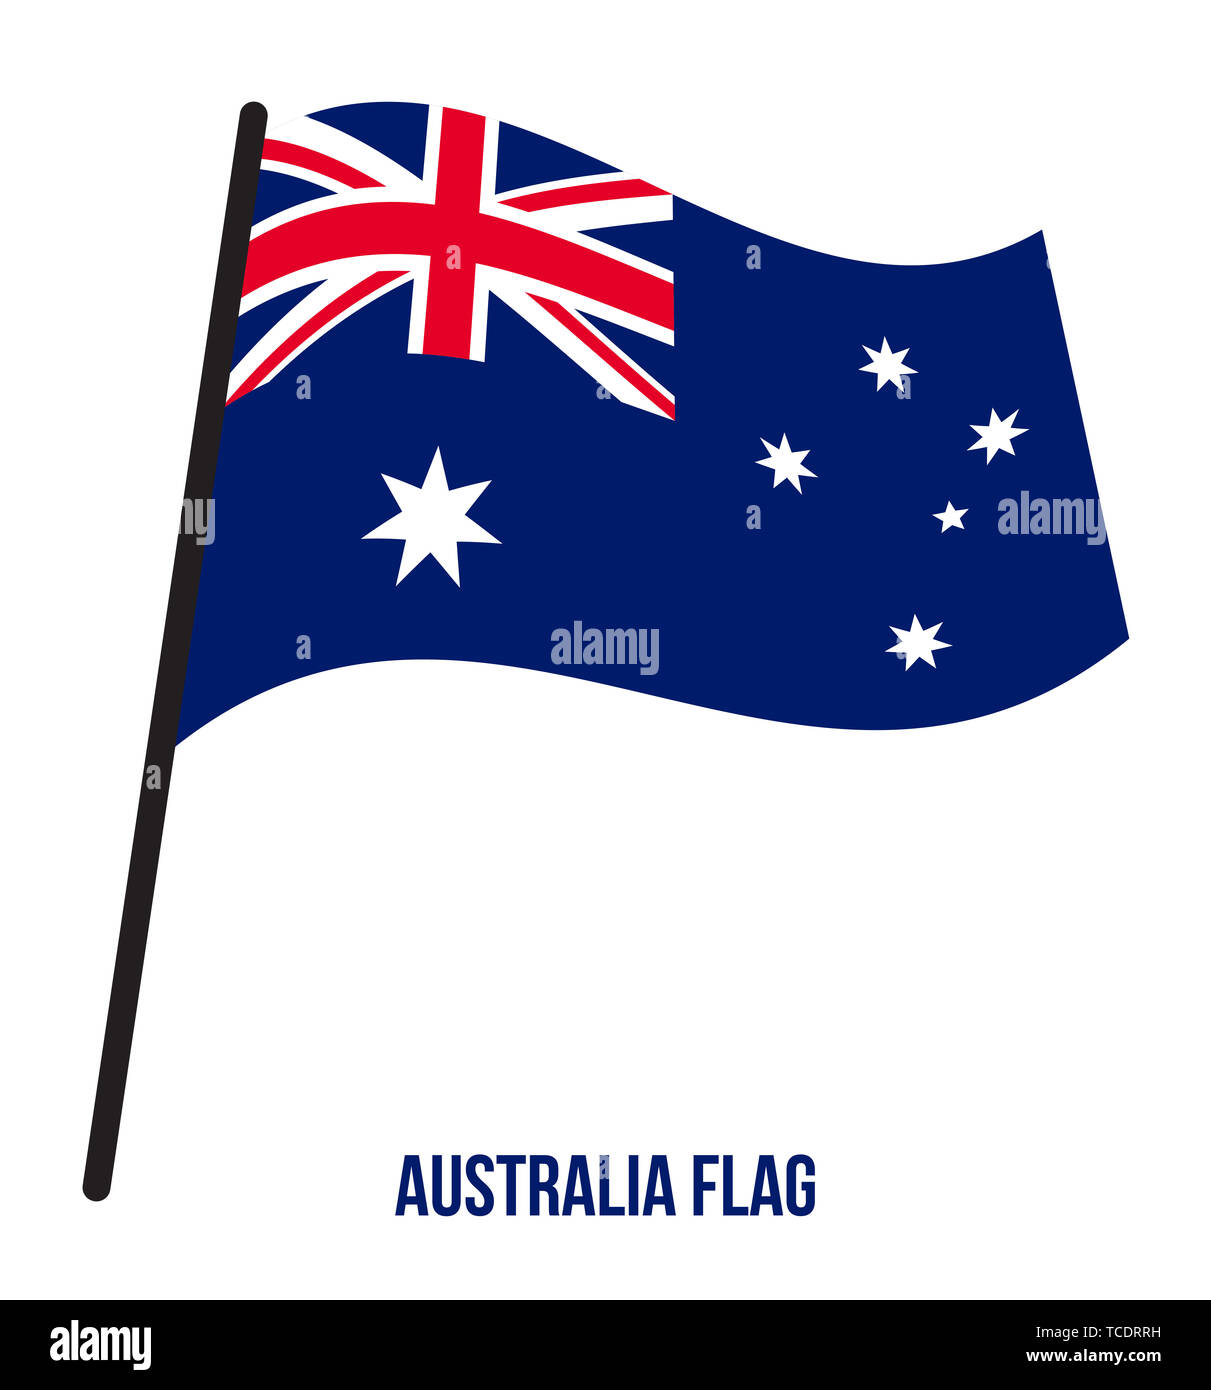 klinge kreativ Følsom Australia Flag Waving Vector Illustration on White Background. Australia  National Flag Stock Photo - Alamy